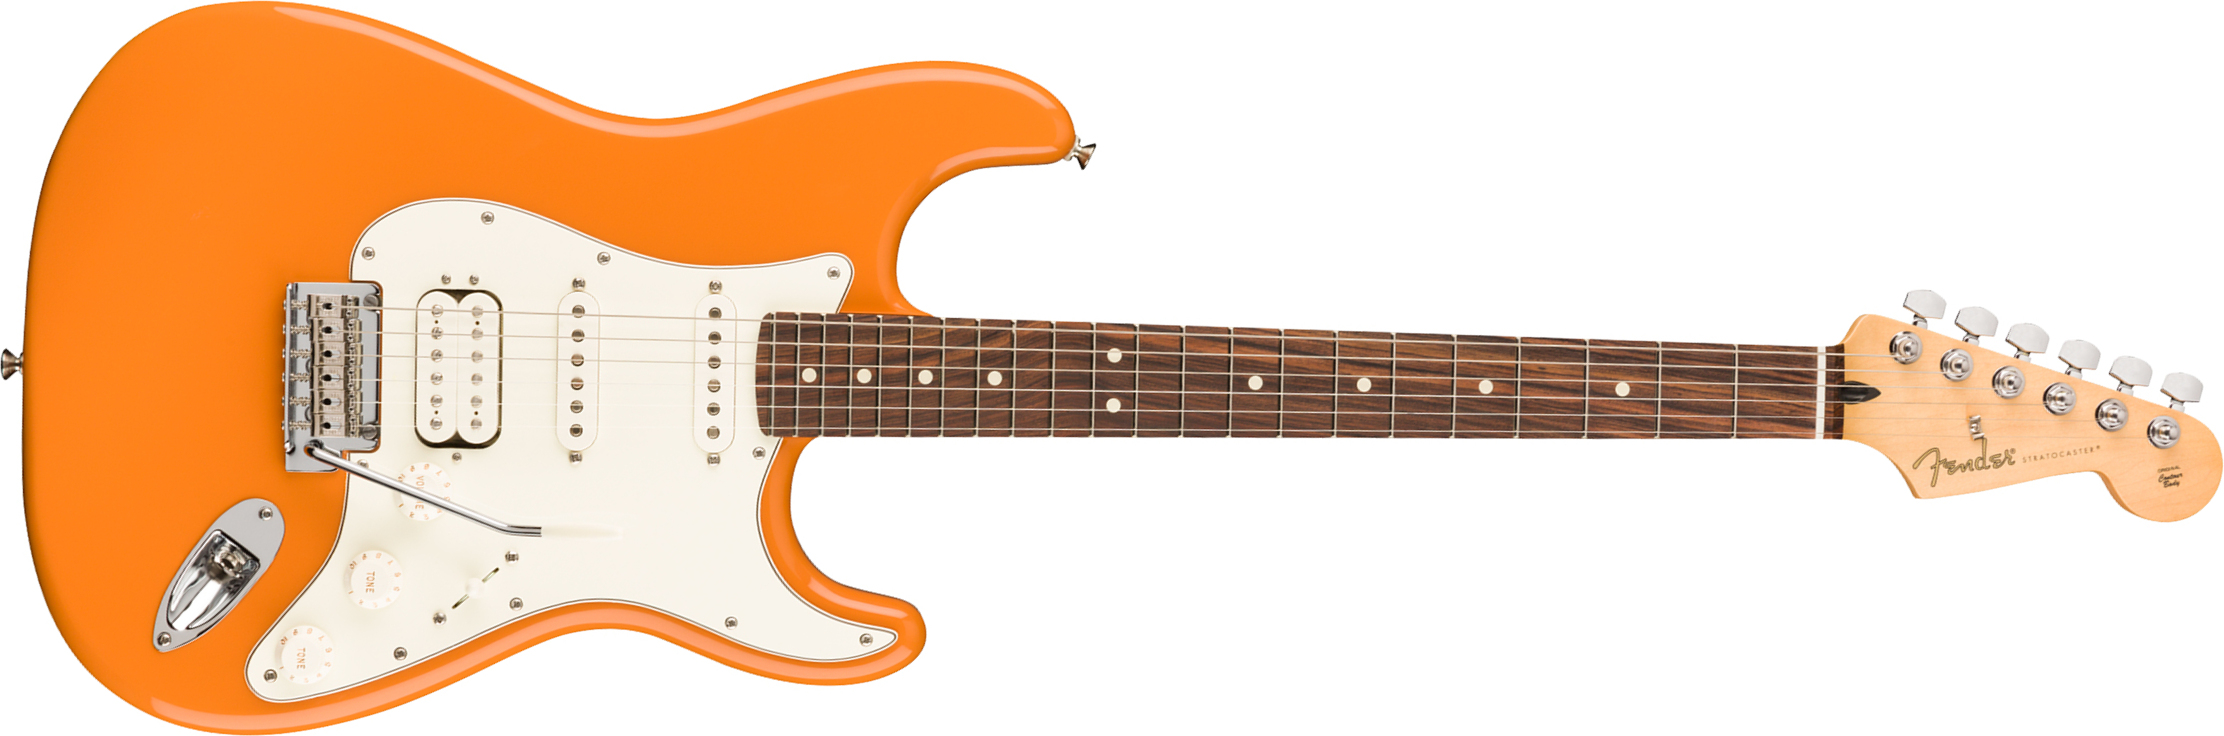 Fender Strat Player Mex Hss Pf - Capri Orange - Elektrische gitaar in Str-vorm - Main picture